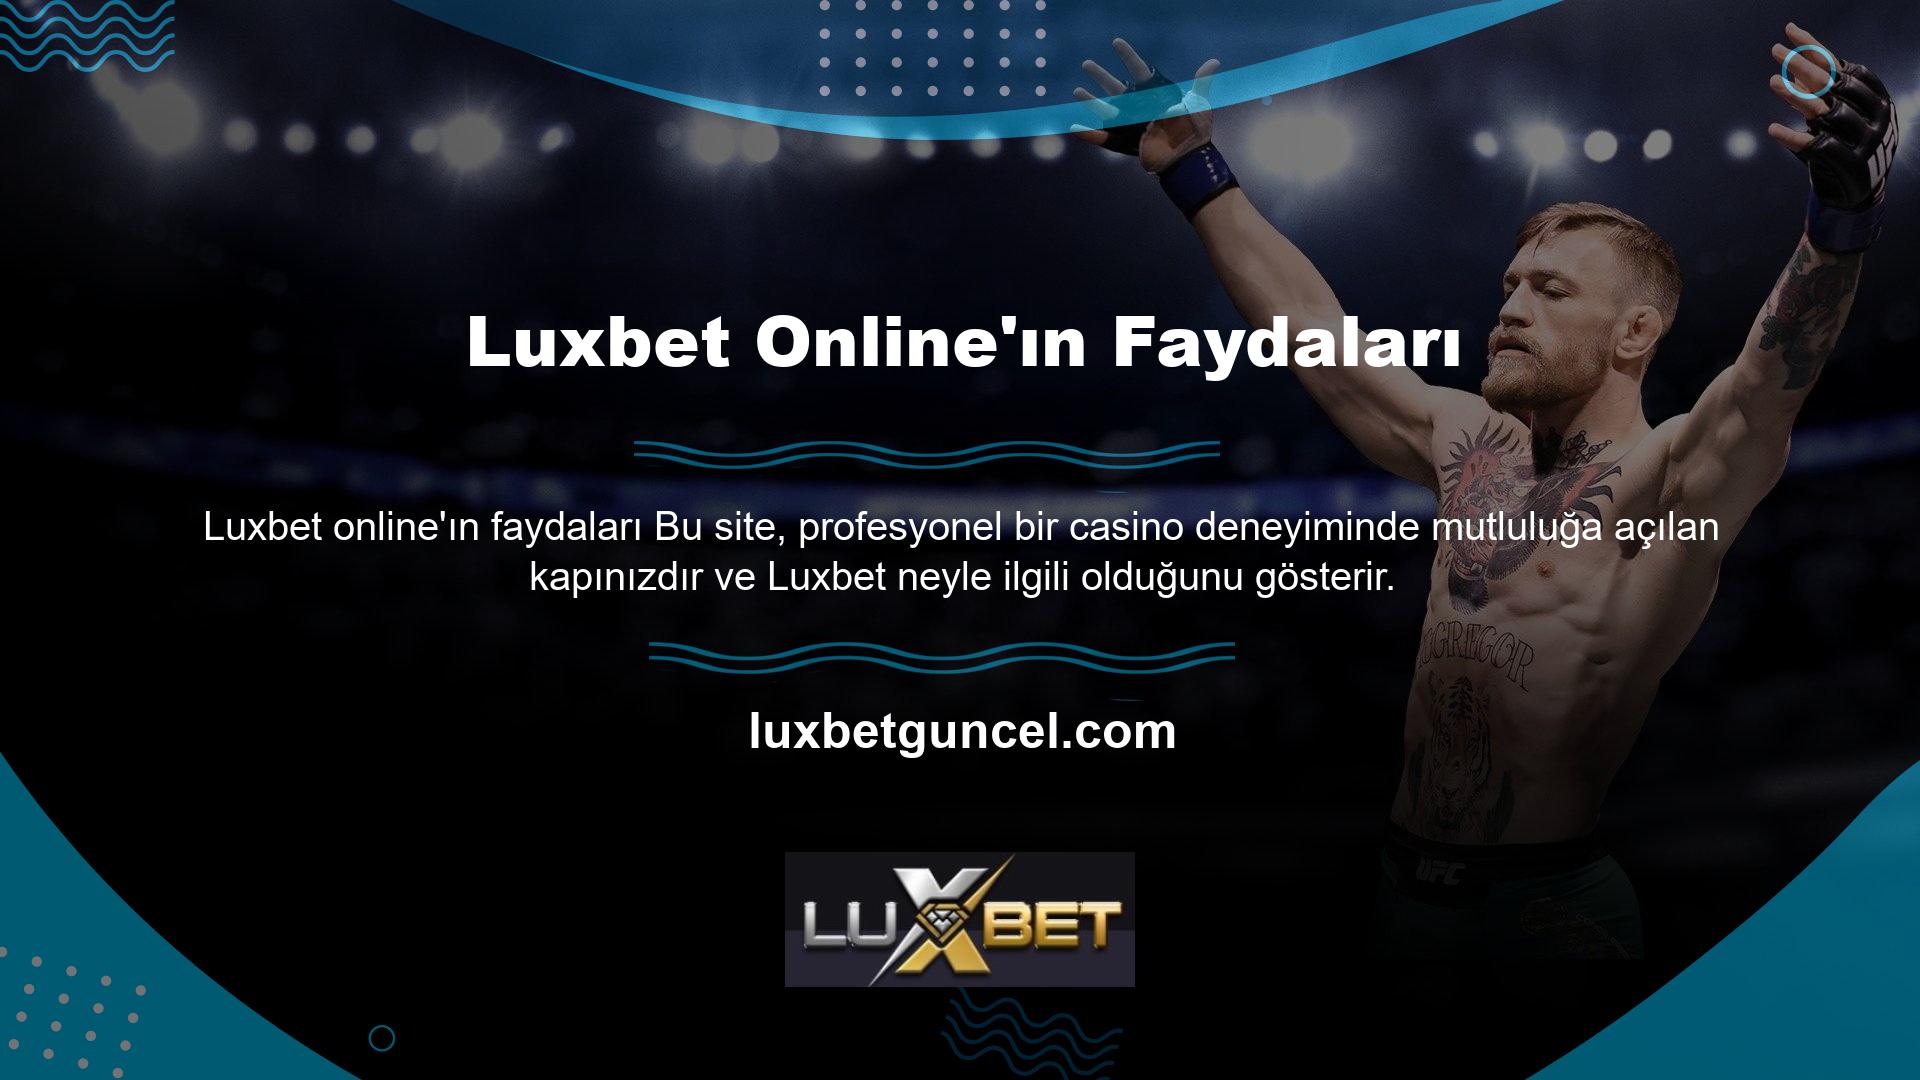 Luxbet online dünyadaki avantajları

	Gerçek oyuncular için canlı casino hizmetleri sunuyoruz